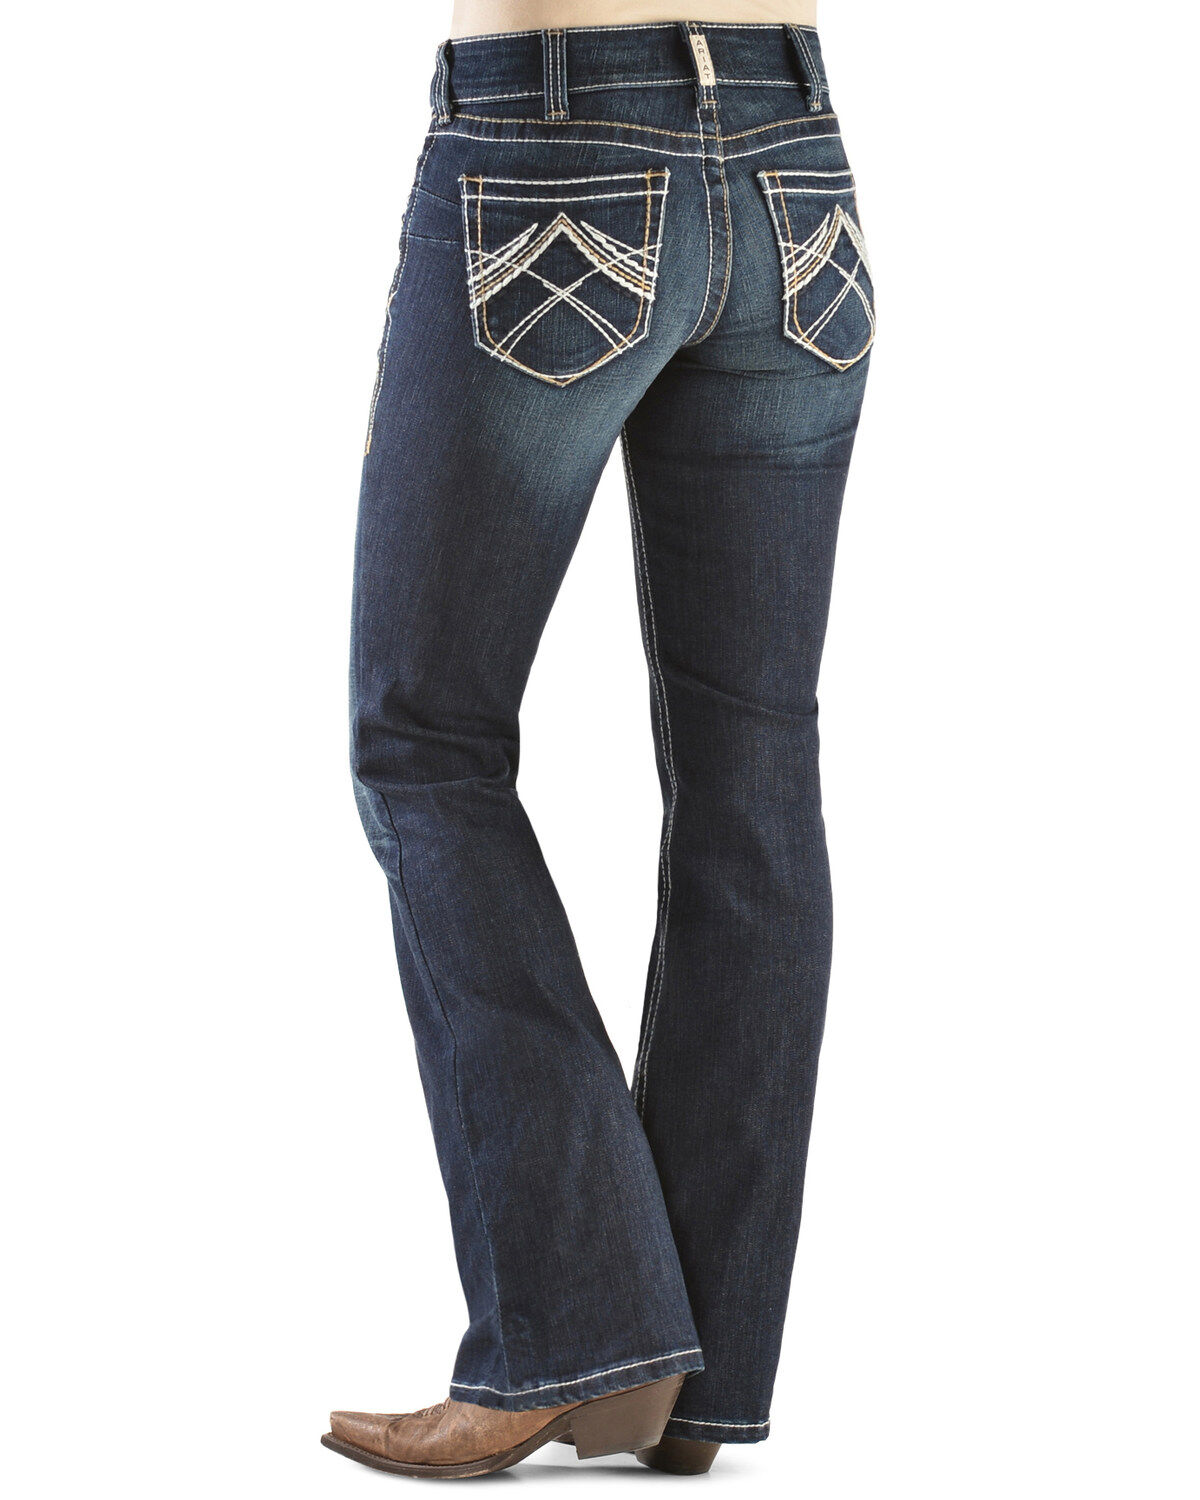 women's jeans boot cut